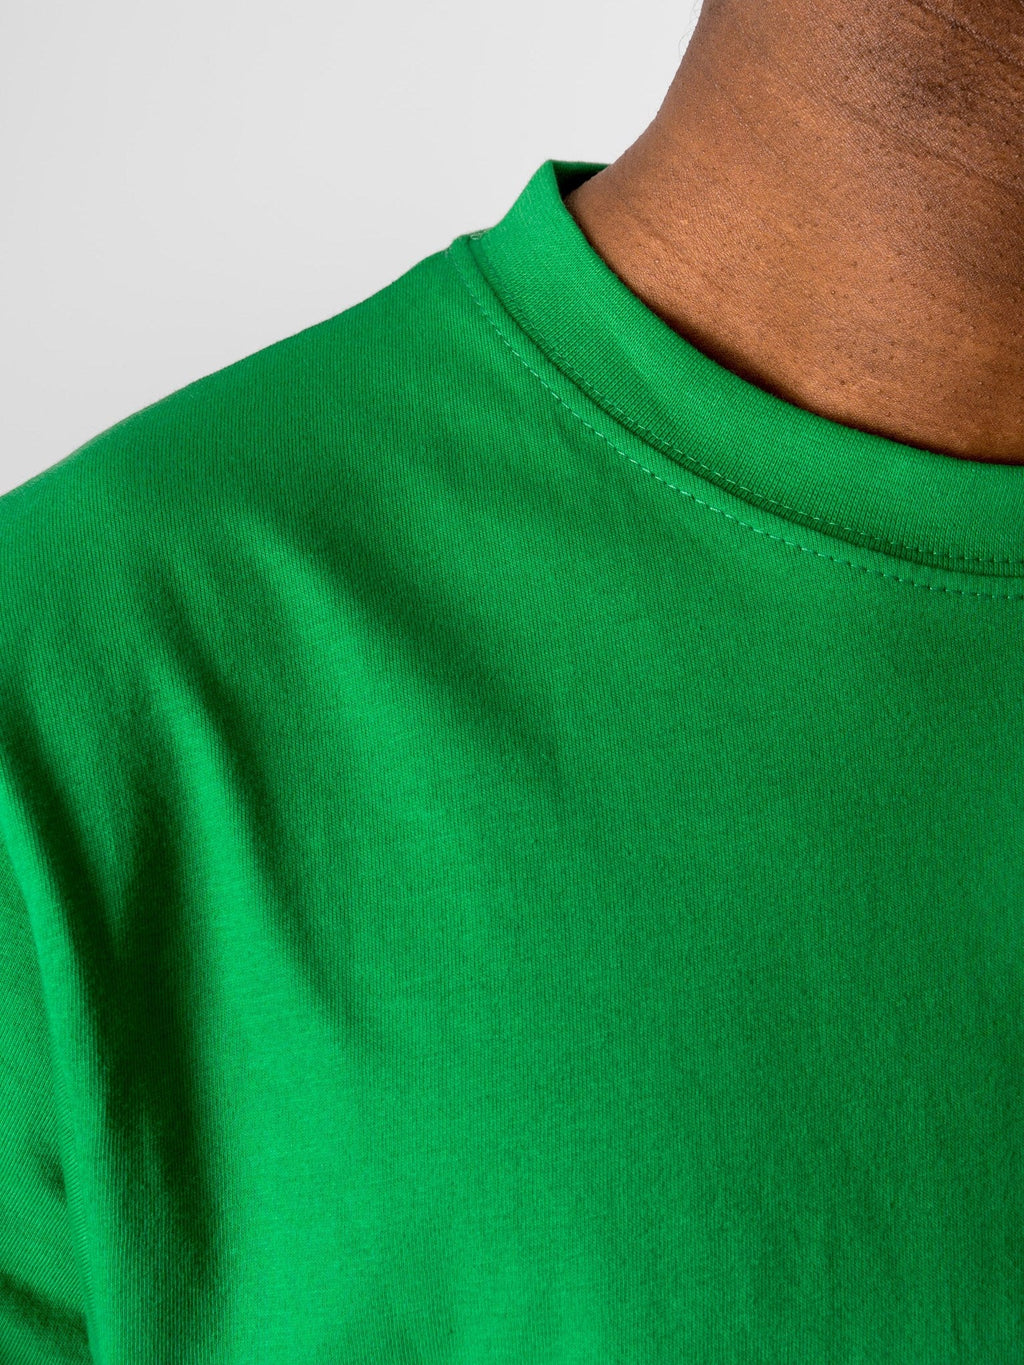 T-shirt surdimensionné - Green de printemps